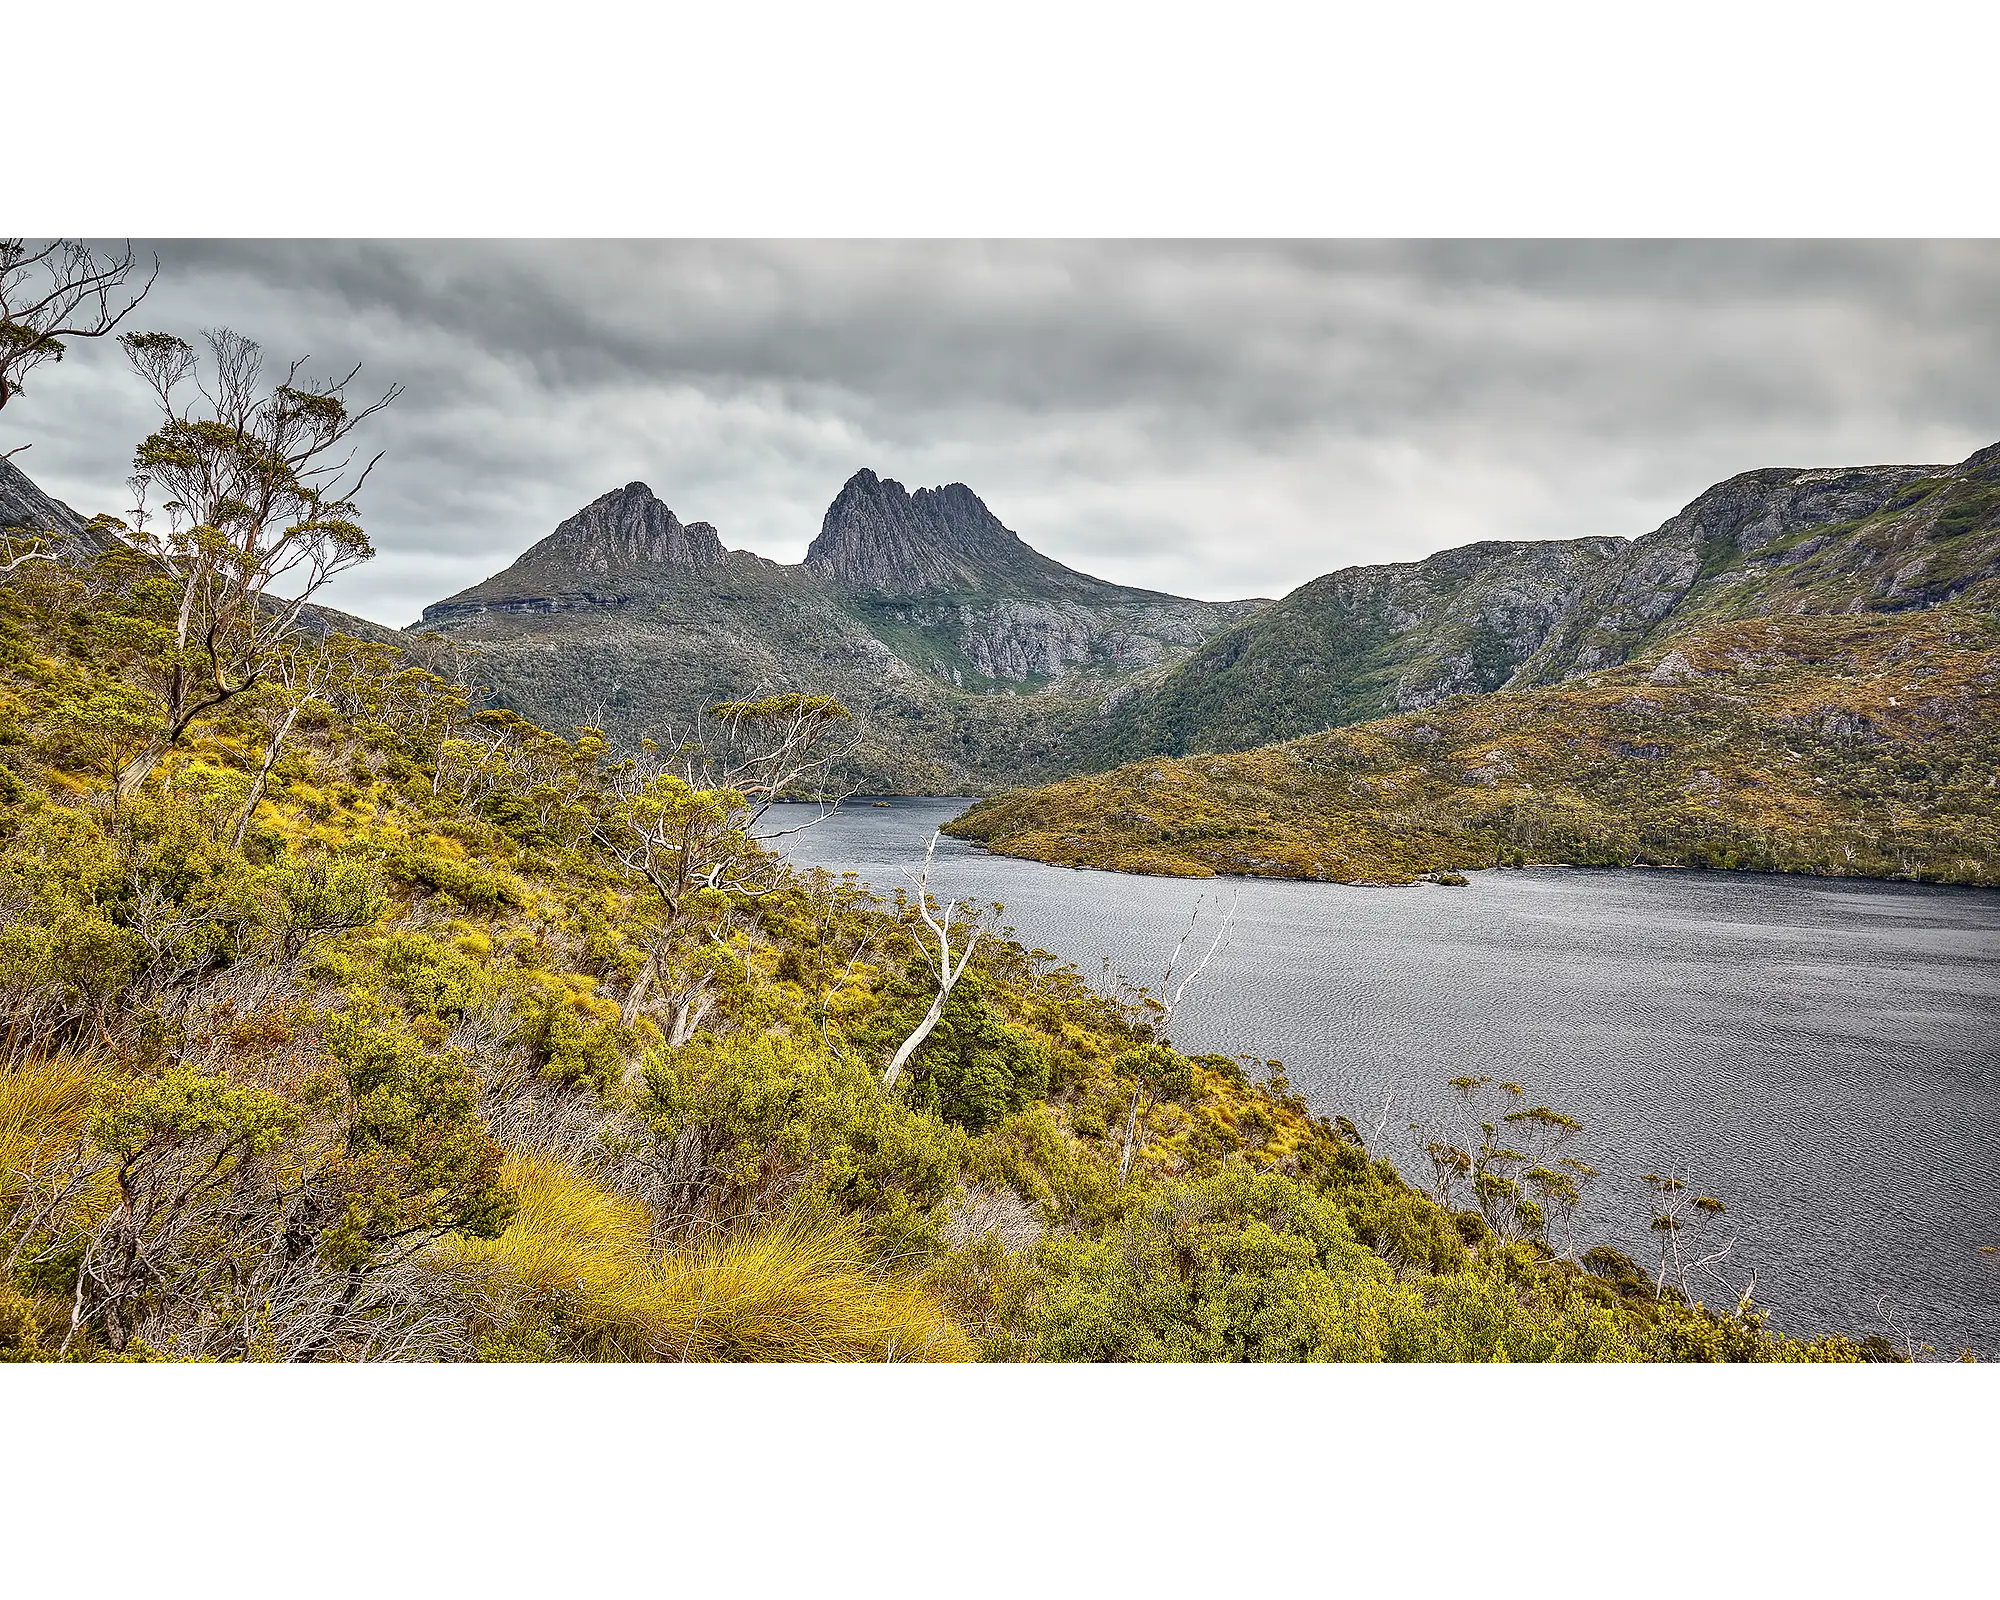 Stormy Wilderness - Cradle Mountain, Tasmania, Australia.